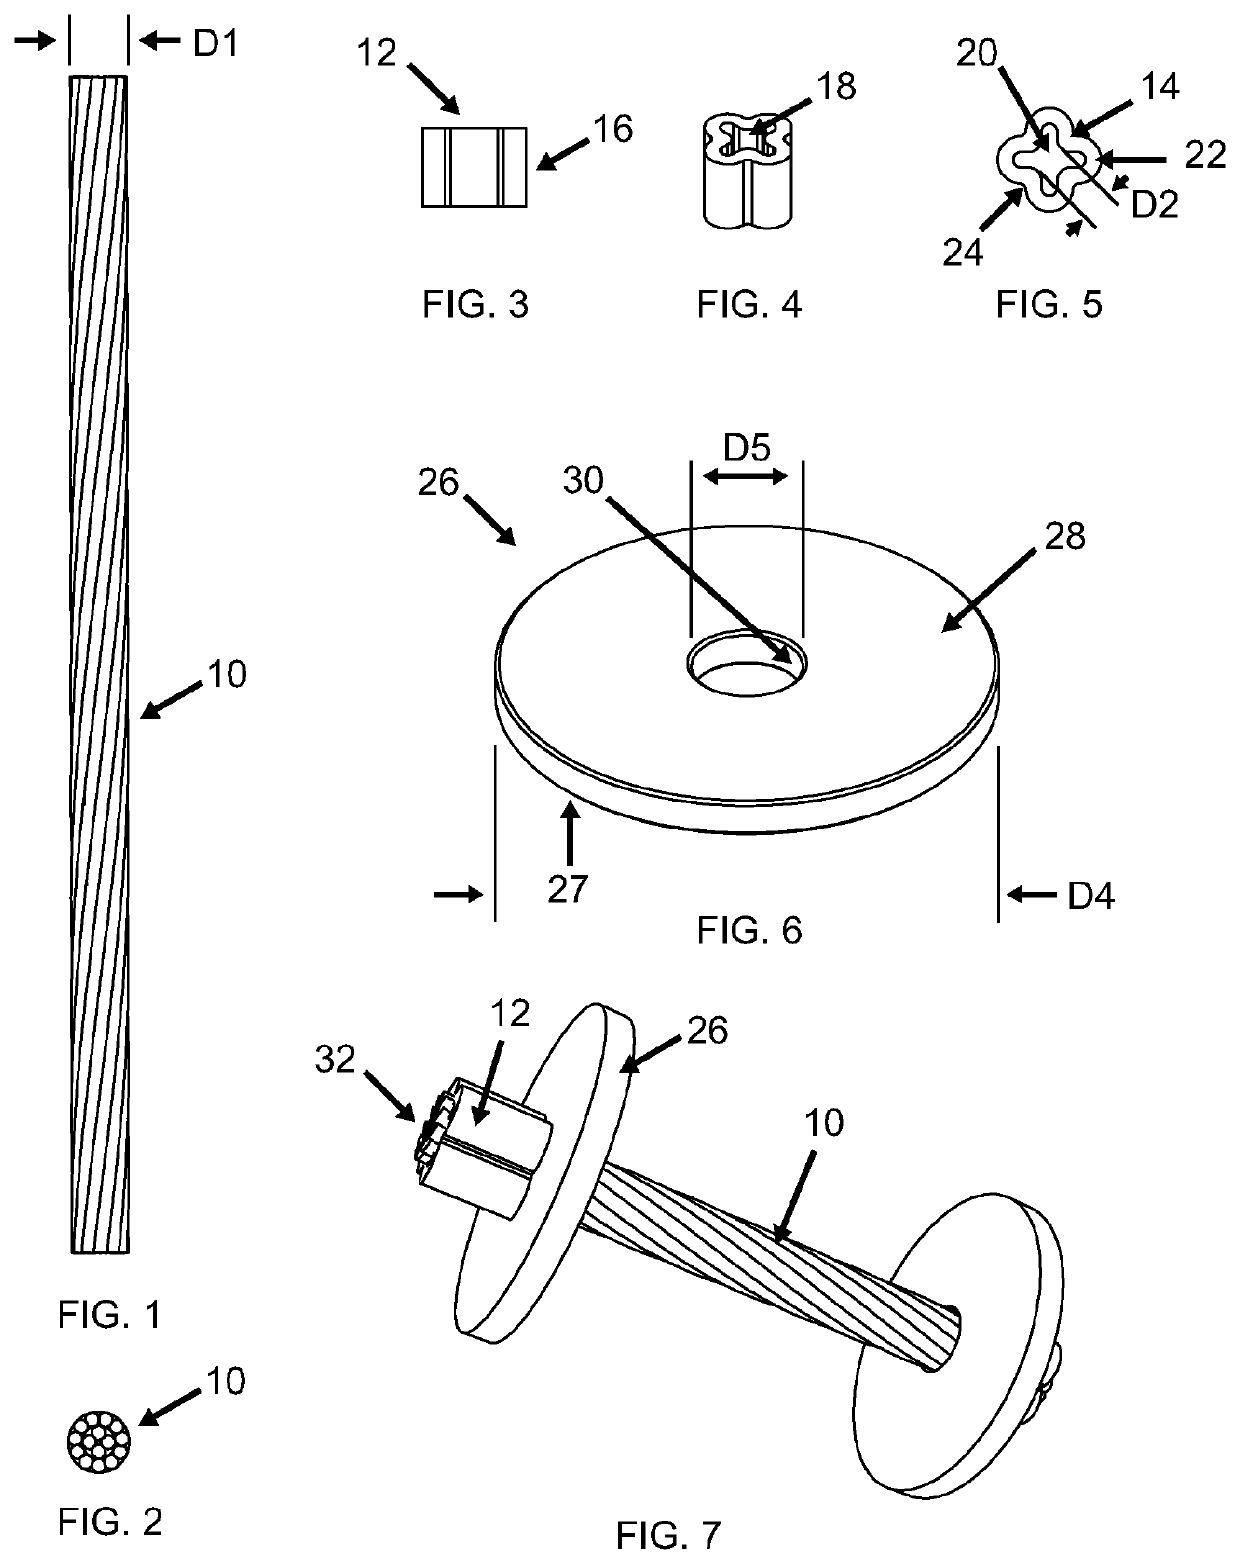 Cable crimp cap apparatus and method